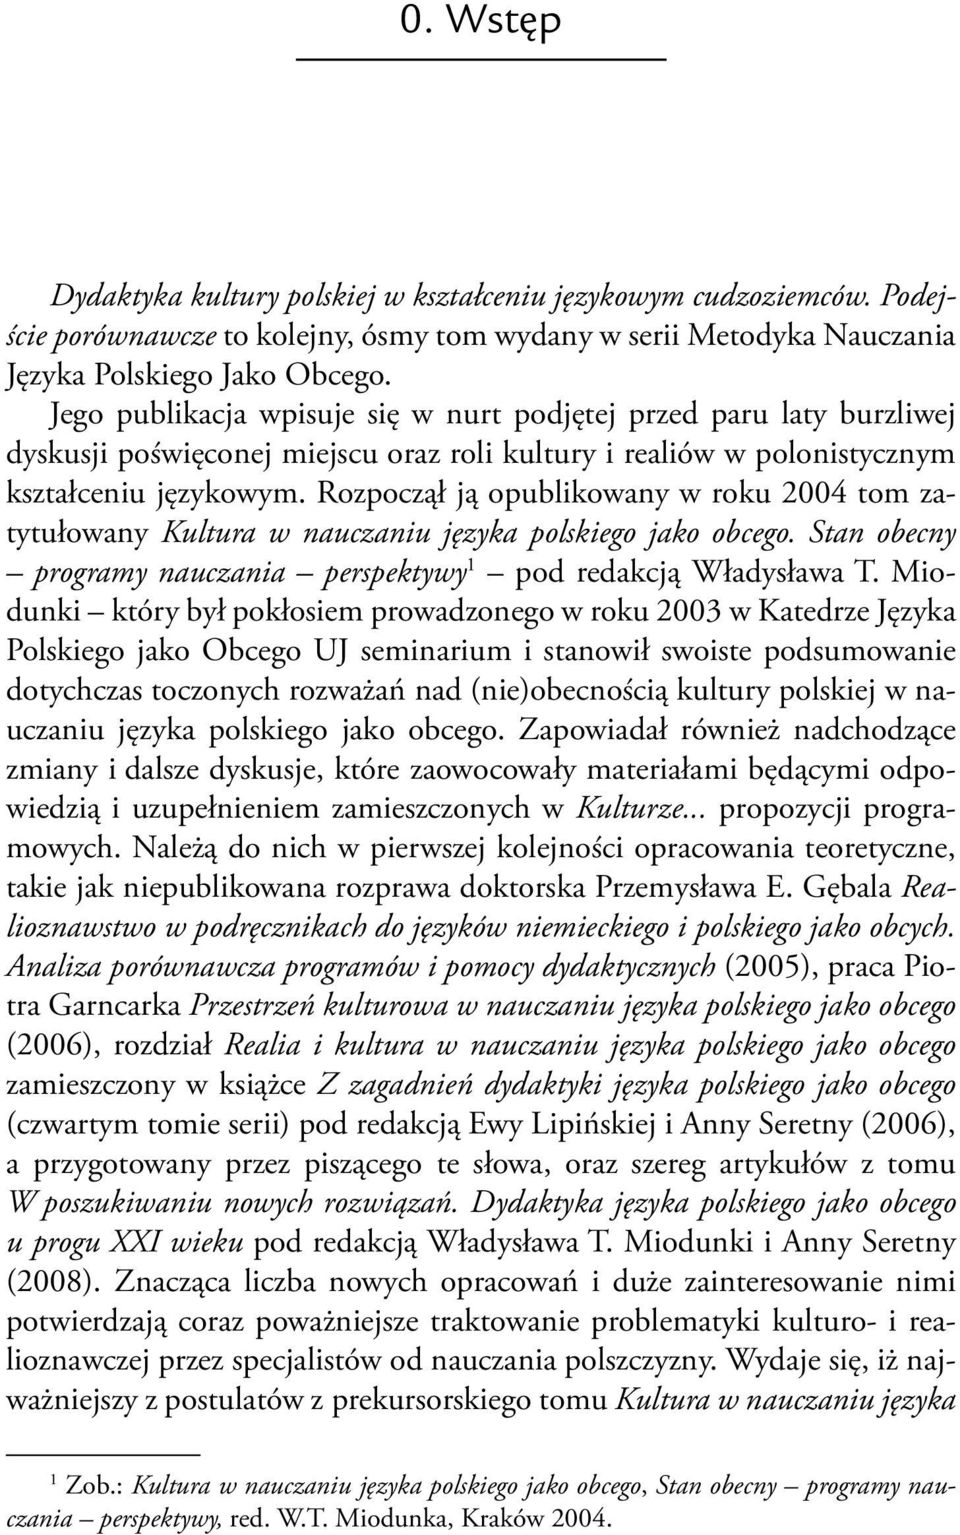 Rozpoczął ją opublikowany w roku 2004 tom zatytułowany Kultura w nauczaniu języka polskiego jako obcego. Stan obecny programy nauczania perspektywy 1 pod redakcją Władysława T.